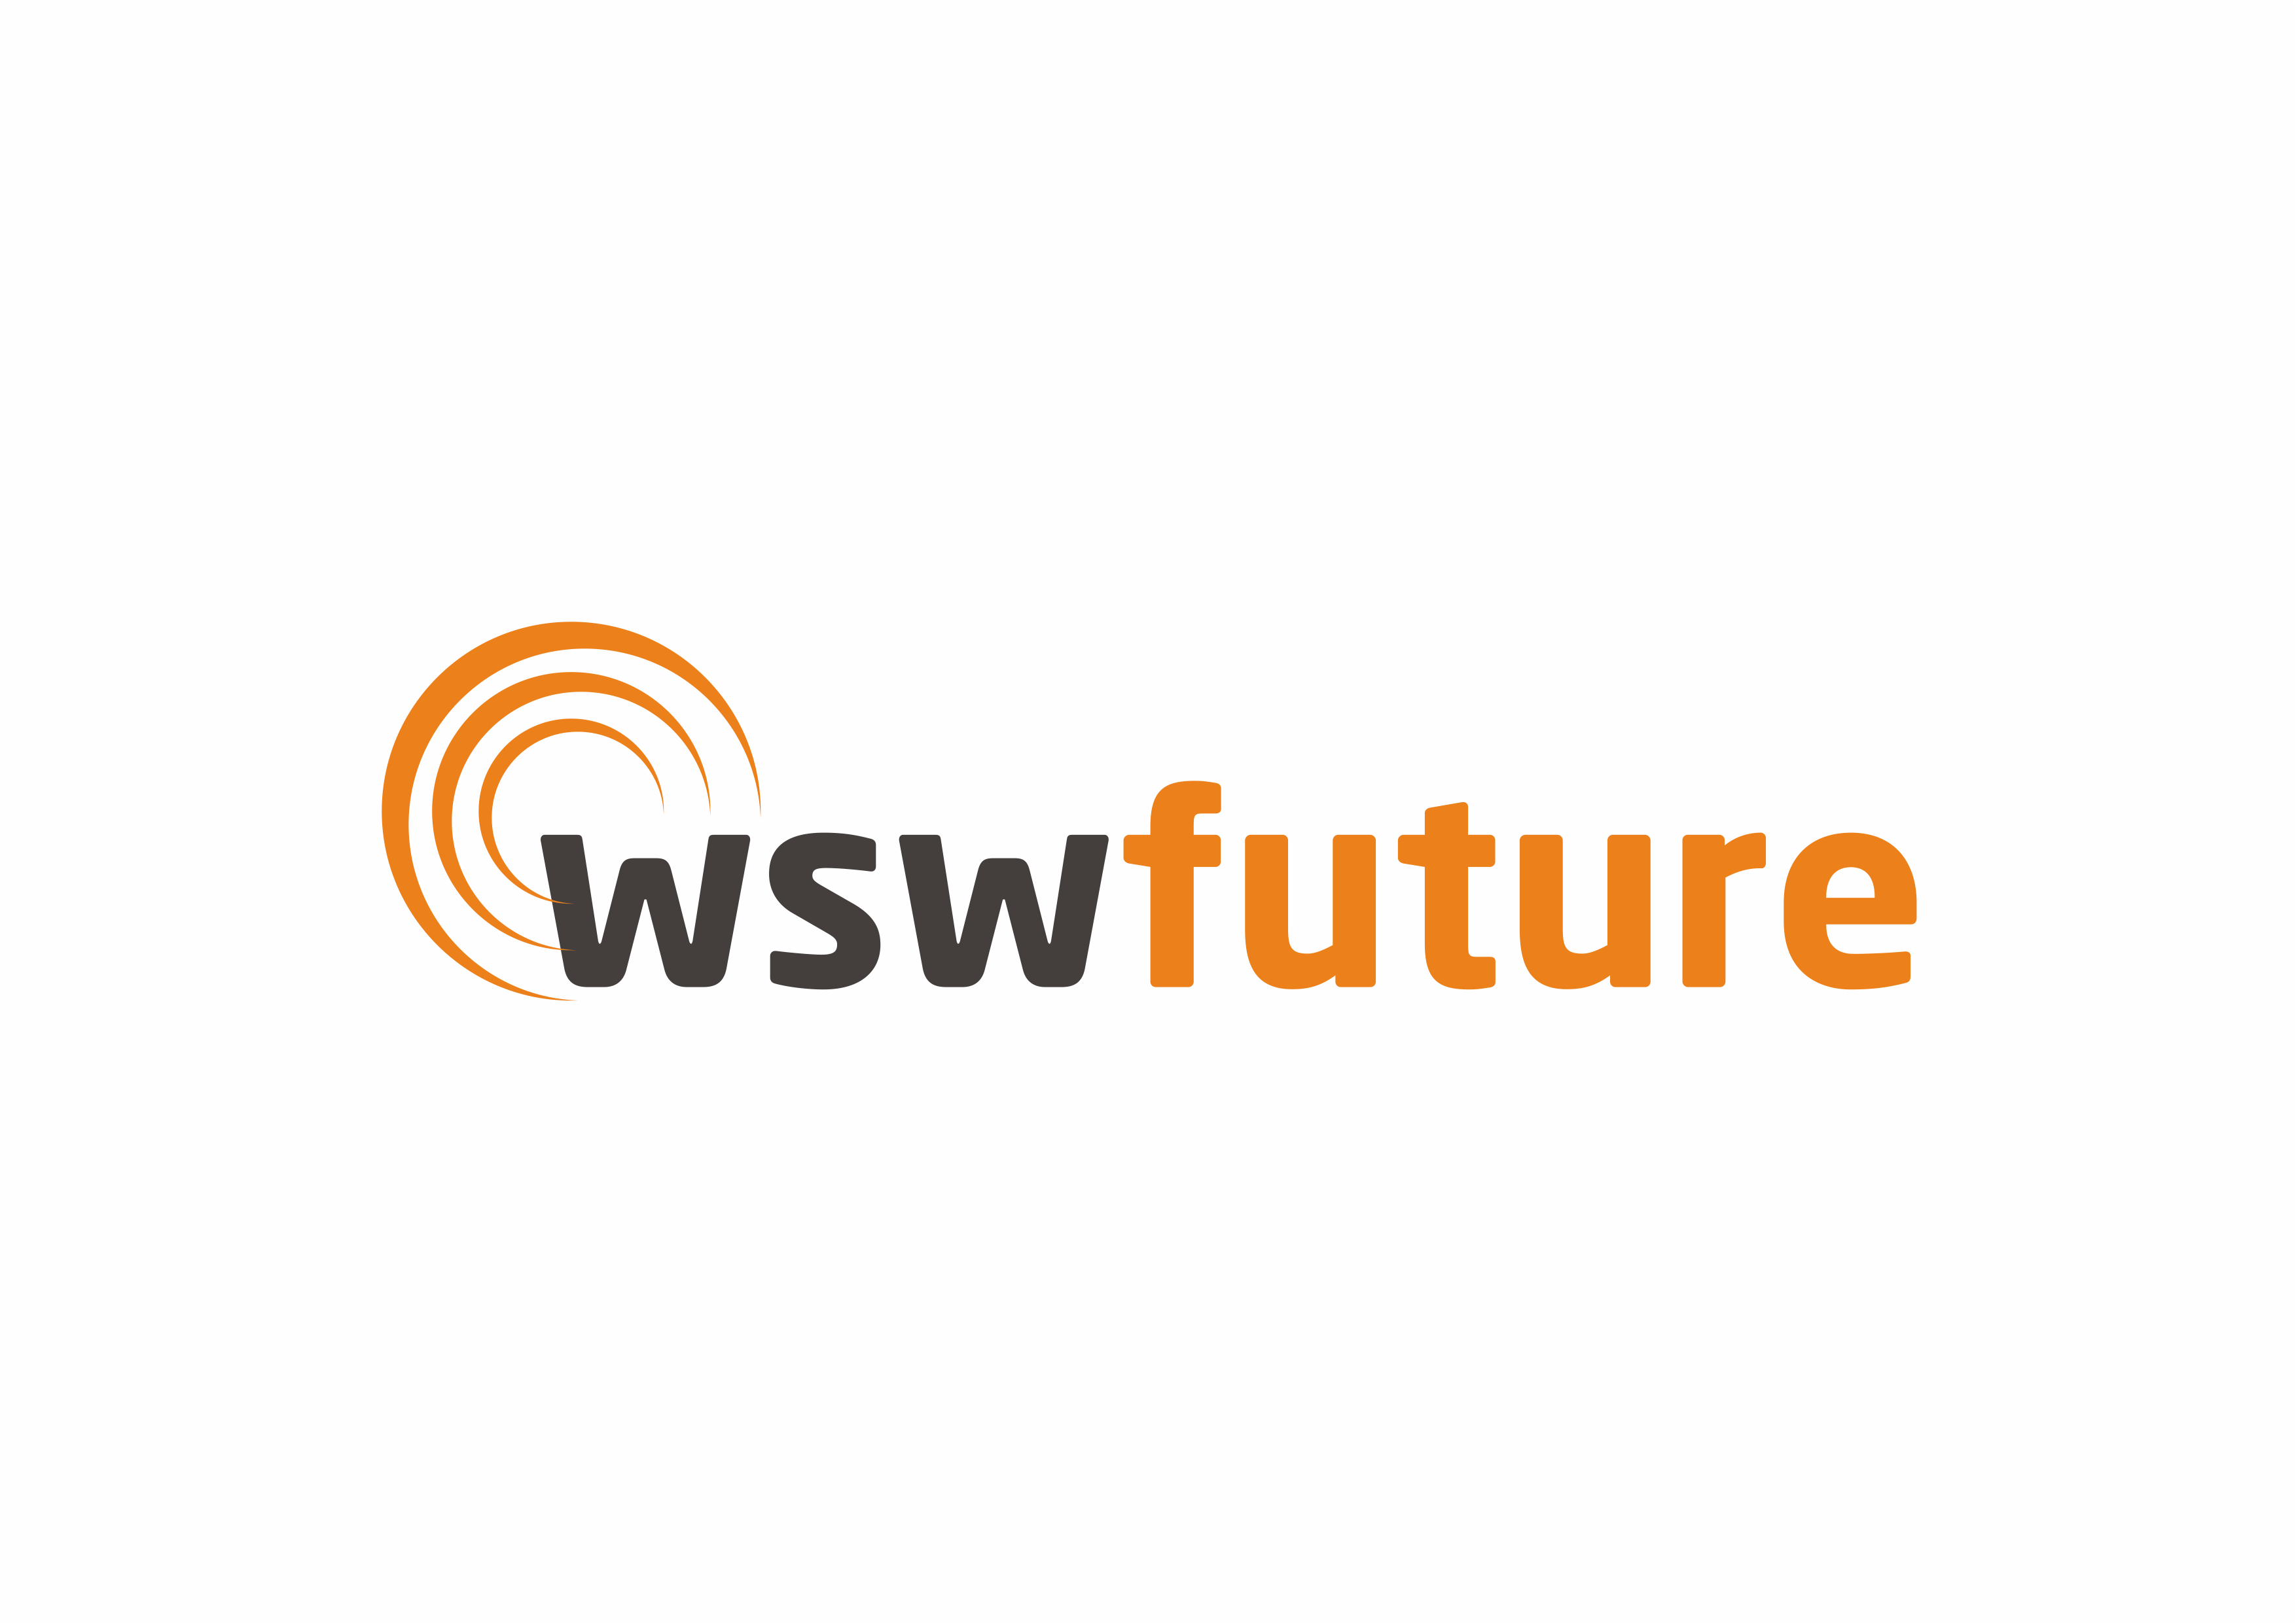 WSW Future